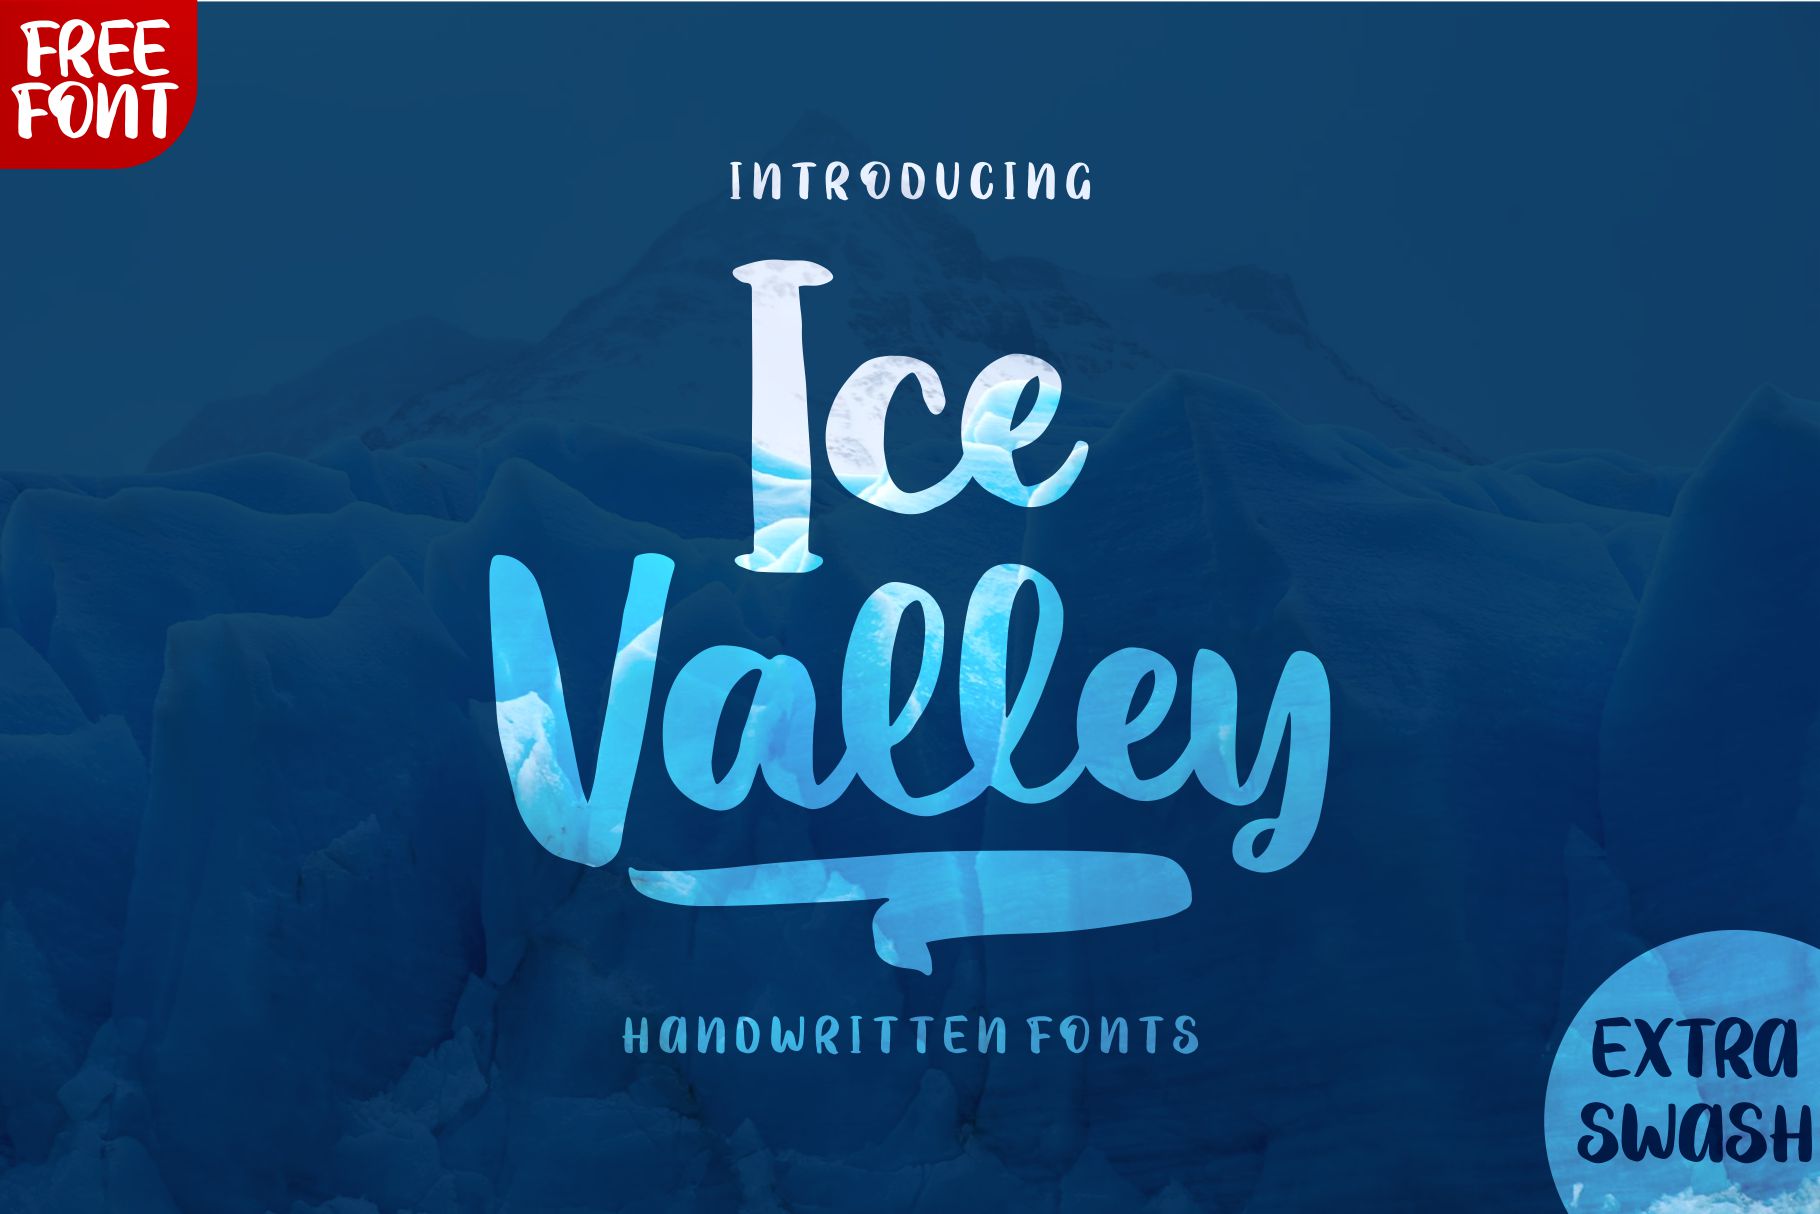 Шрифт айс. Ice шрифт. Ice красивым шрифтом. Ice font background. Шрифты мороженое крем алфавит.